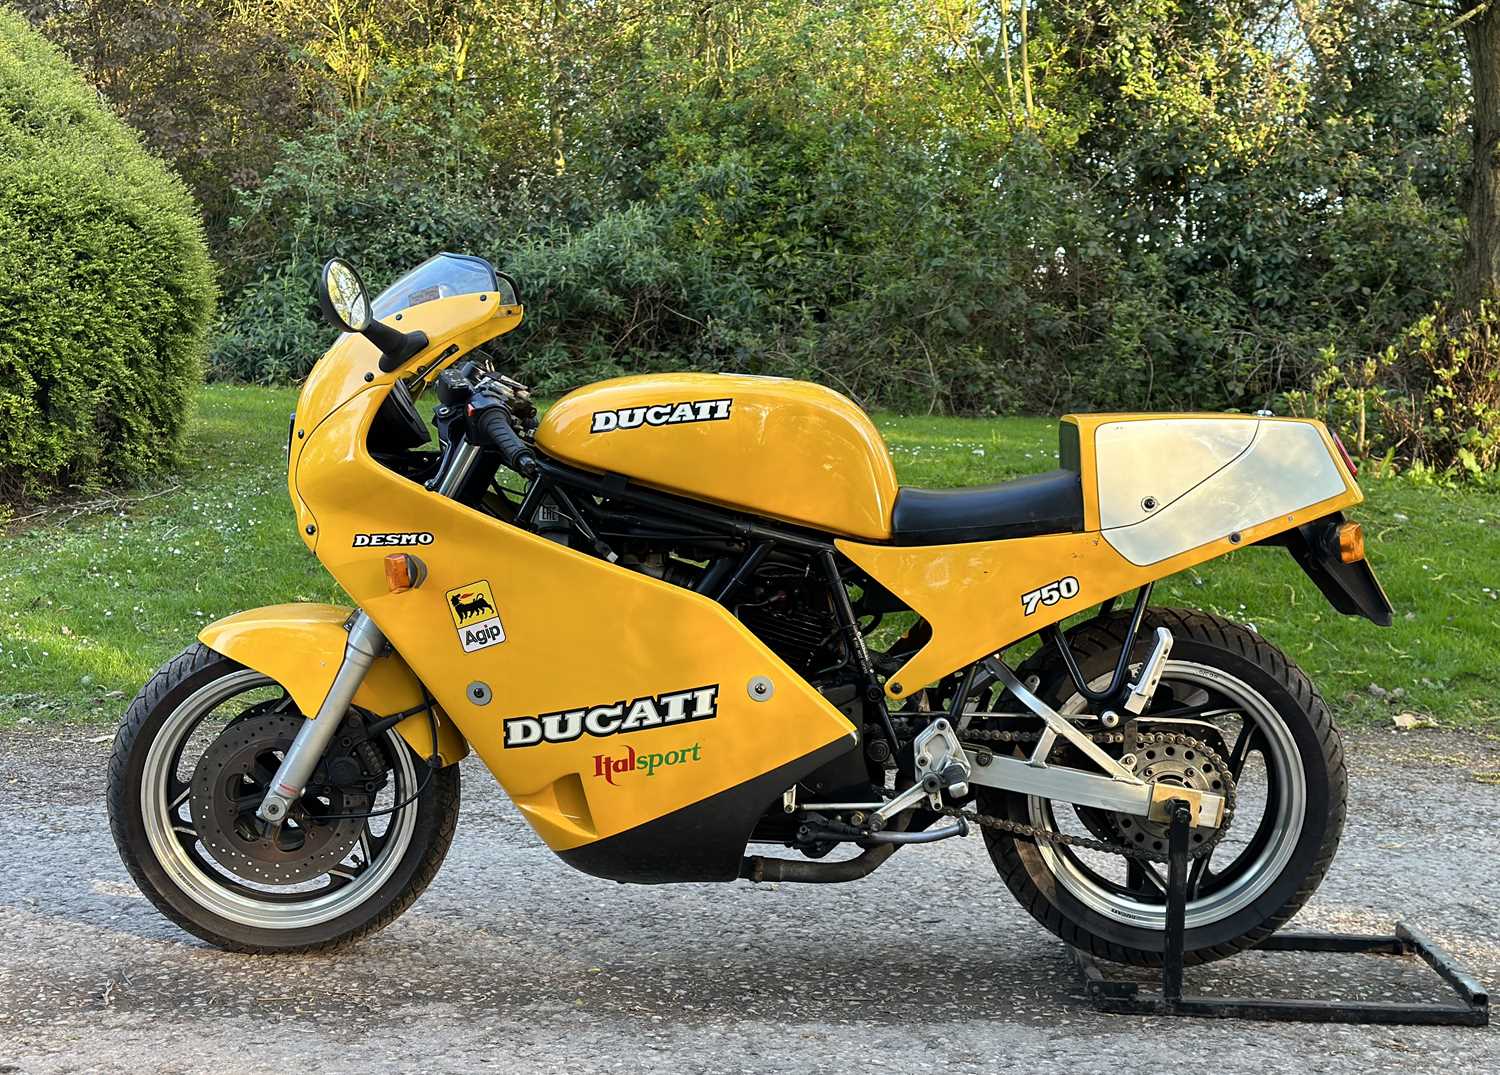 1990 Ducati 750 Sport Desmo - Image 2 of 17